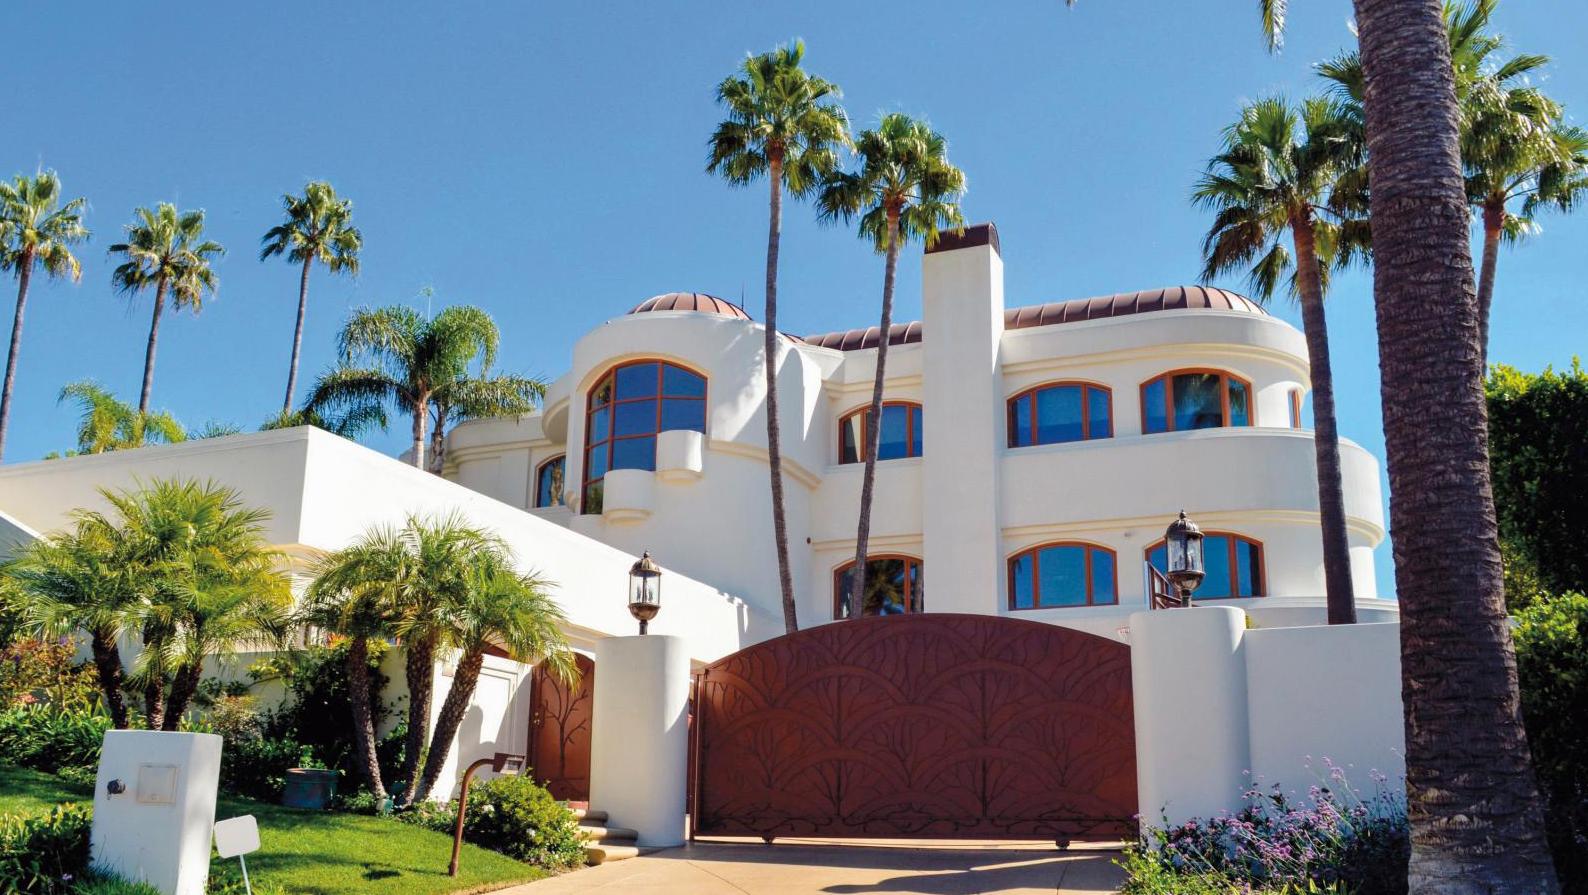 La Villa Albertine in Los Angeles.DR The Villa Albertine: A New French Cultural Model in the United States